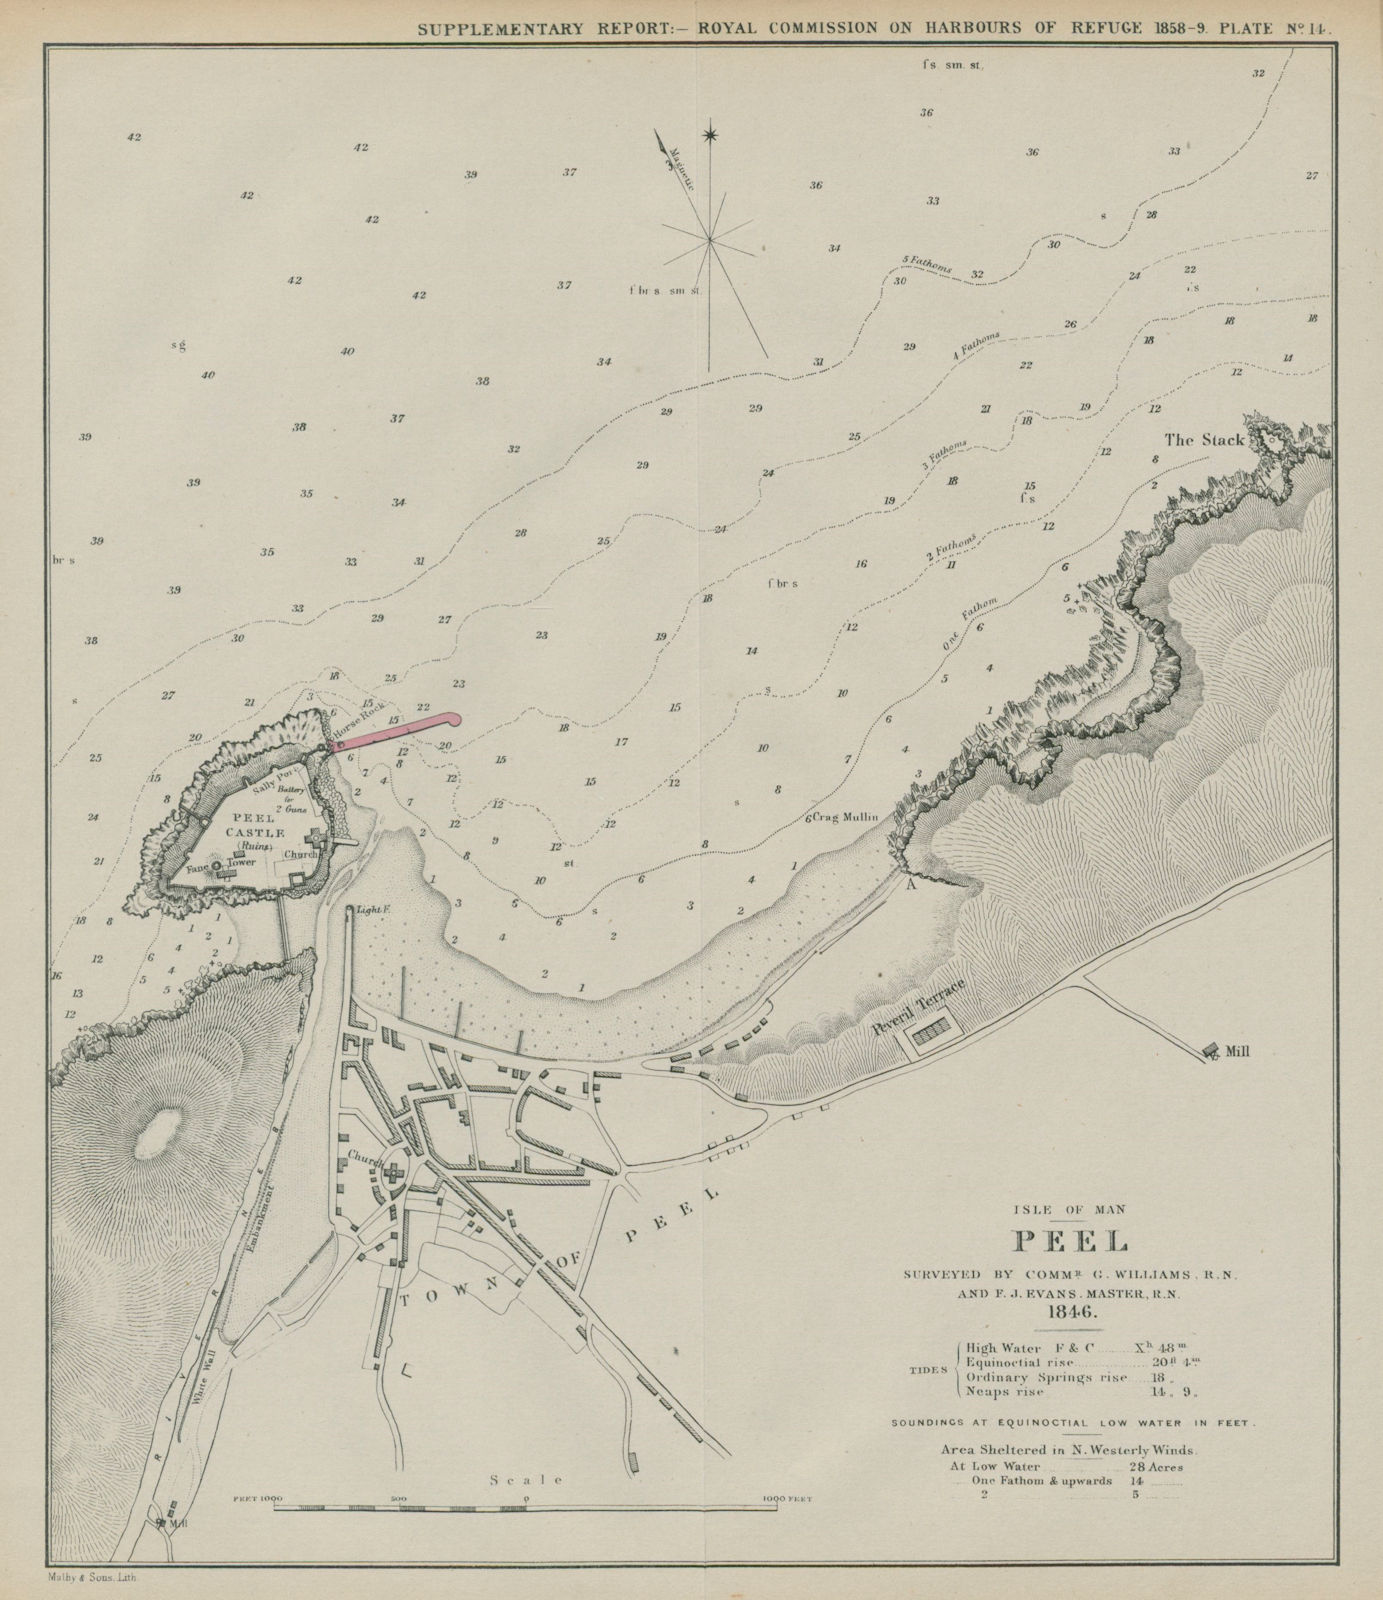 Peel bay surveyed by Williams & Evans. Proposed breakwater. Isle of Man 1859 map